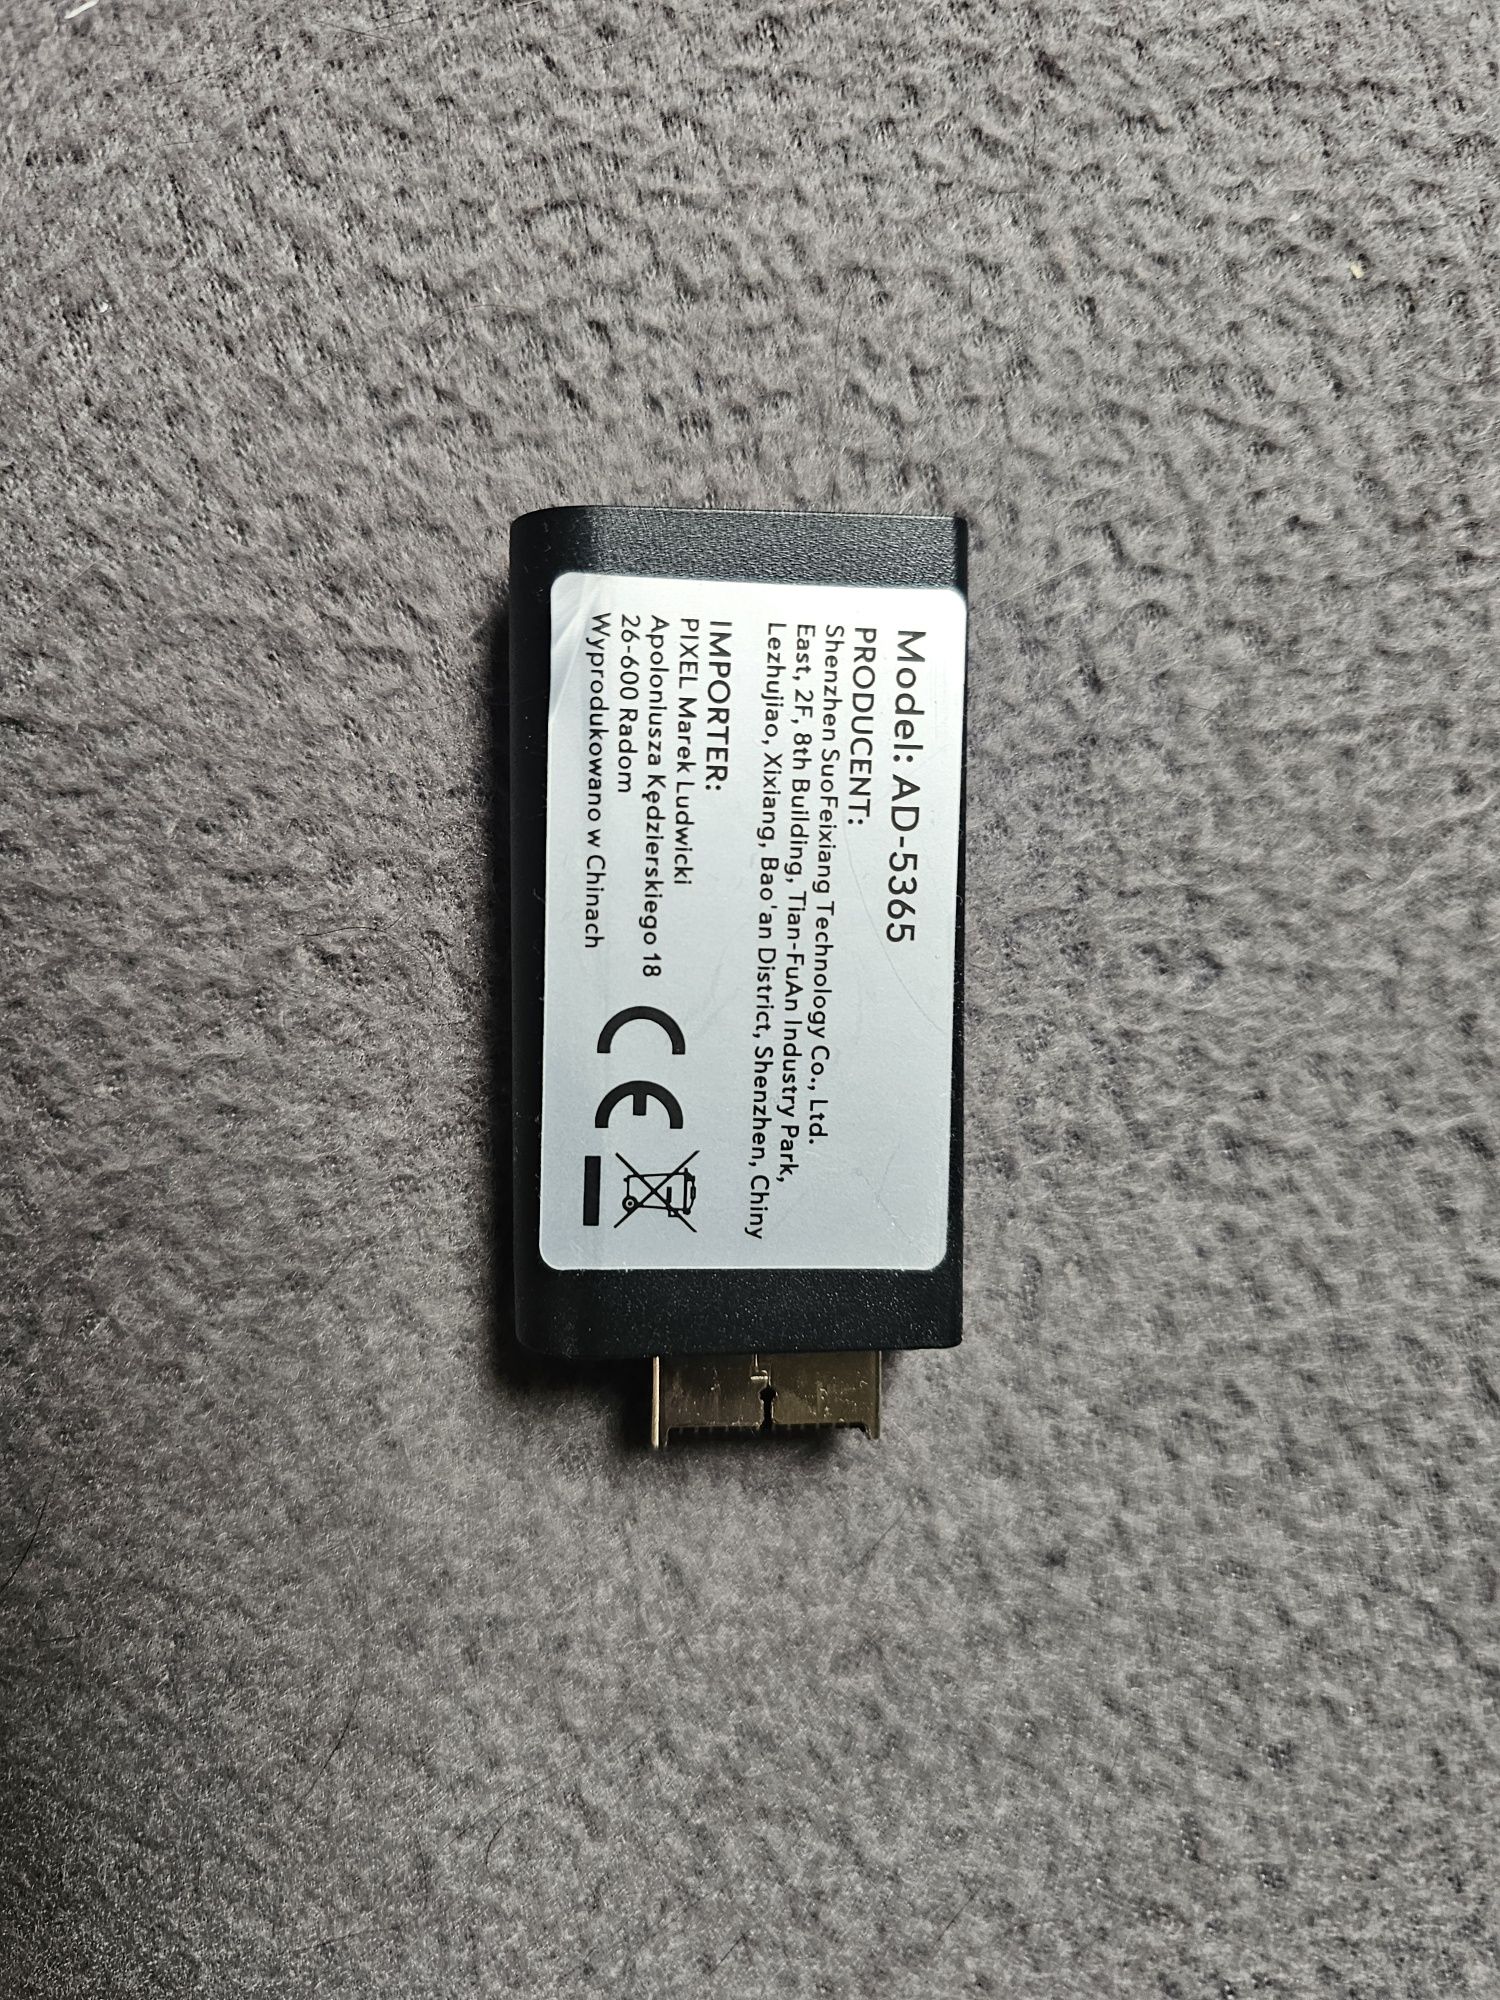 Adapter PS2 HDMI